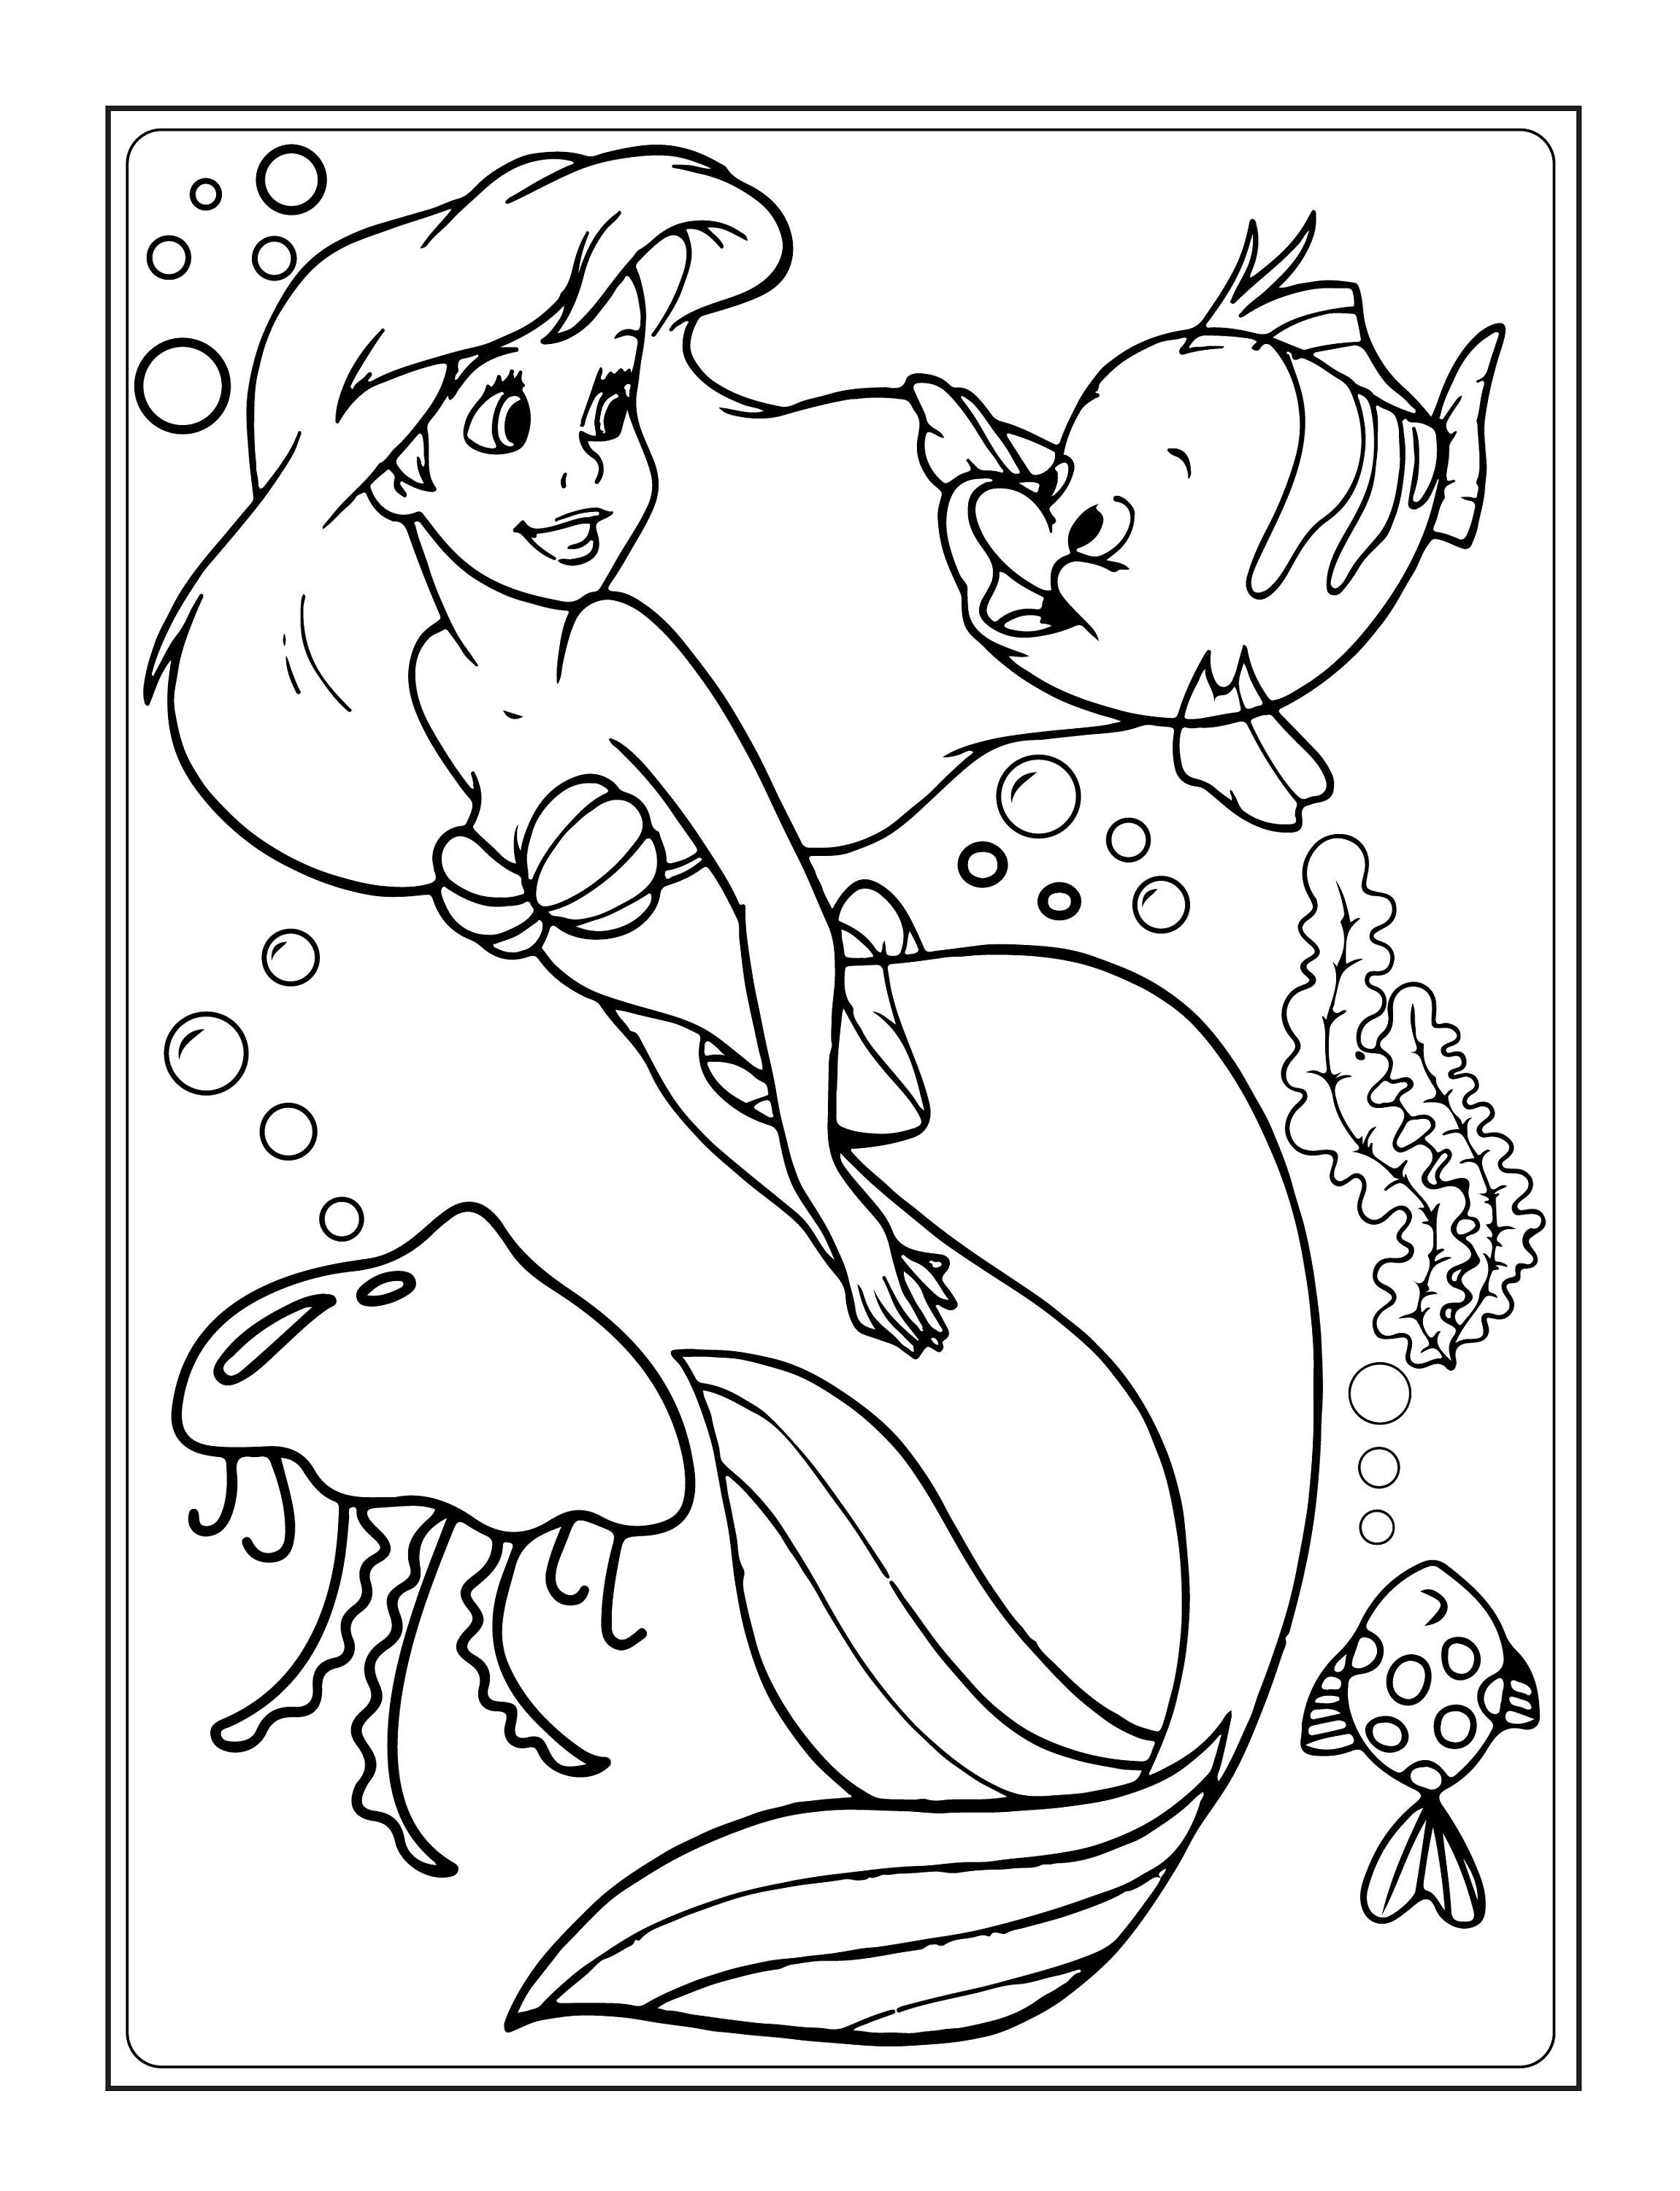 Mermaid Coloring Book: Mermaids Coloring Book, little mermaid book, little mermaid  coloring book, mermaid book, among the mermaids, Mermaid C (Paperback)